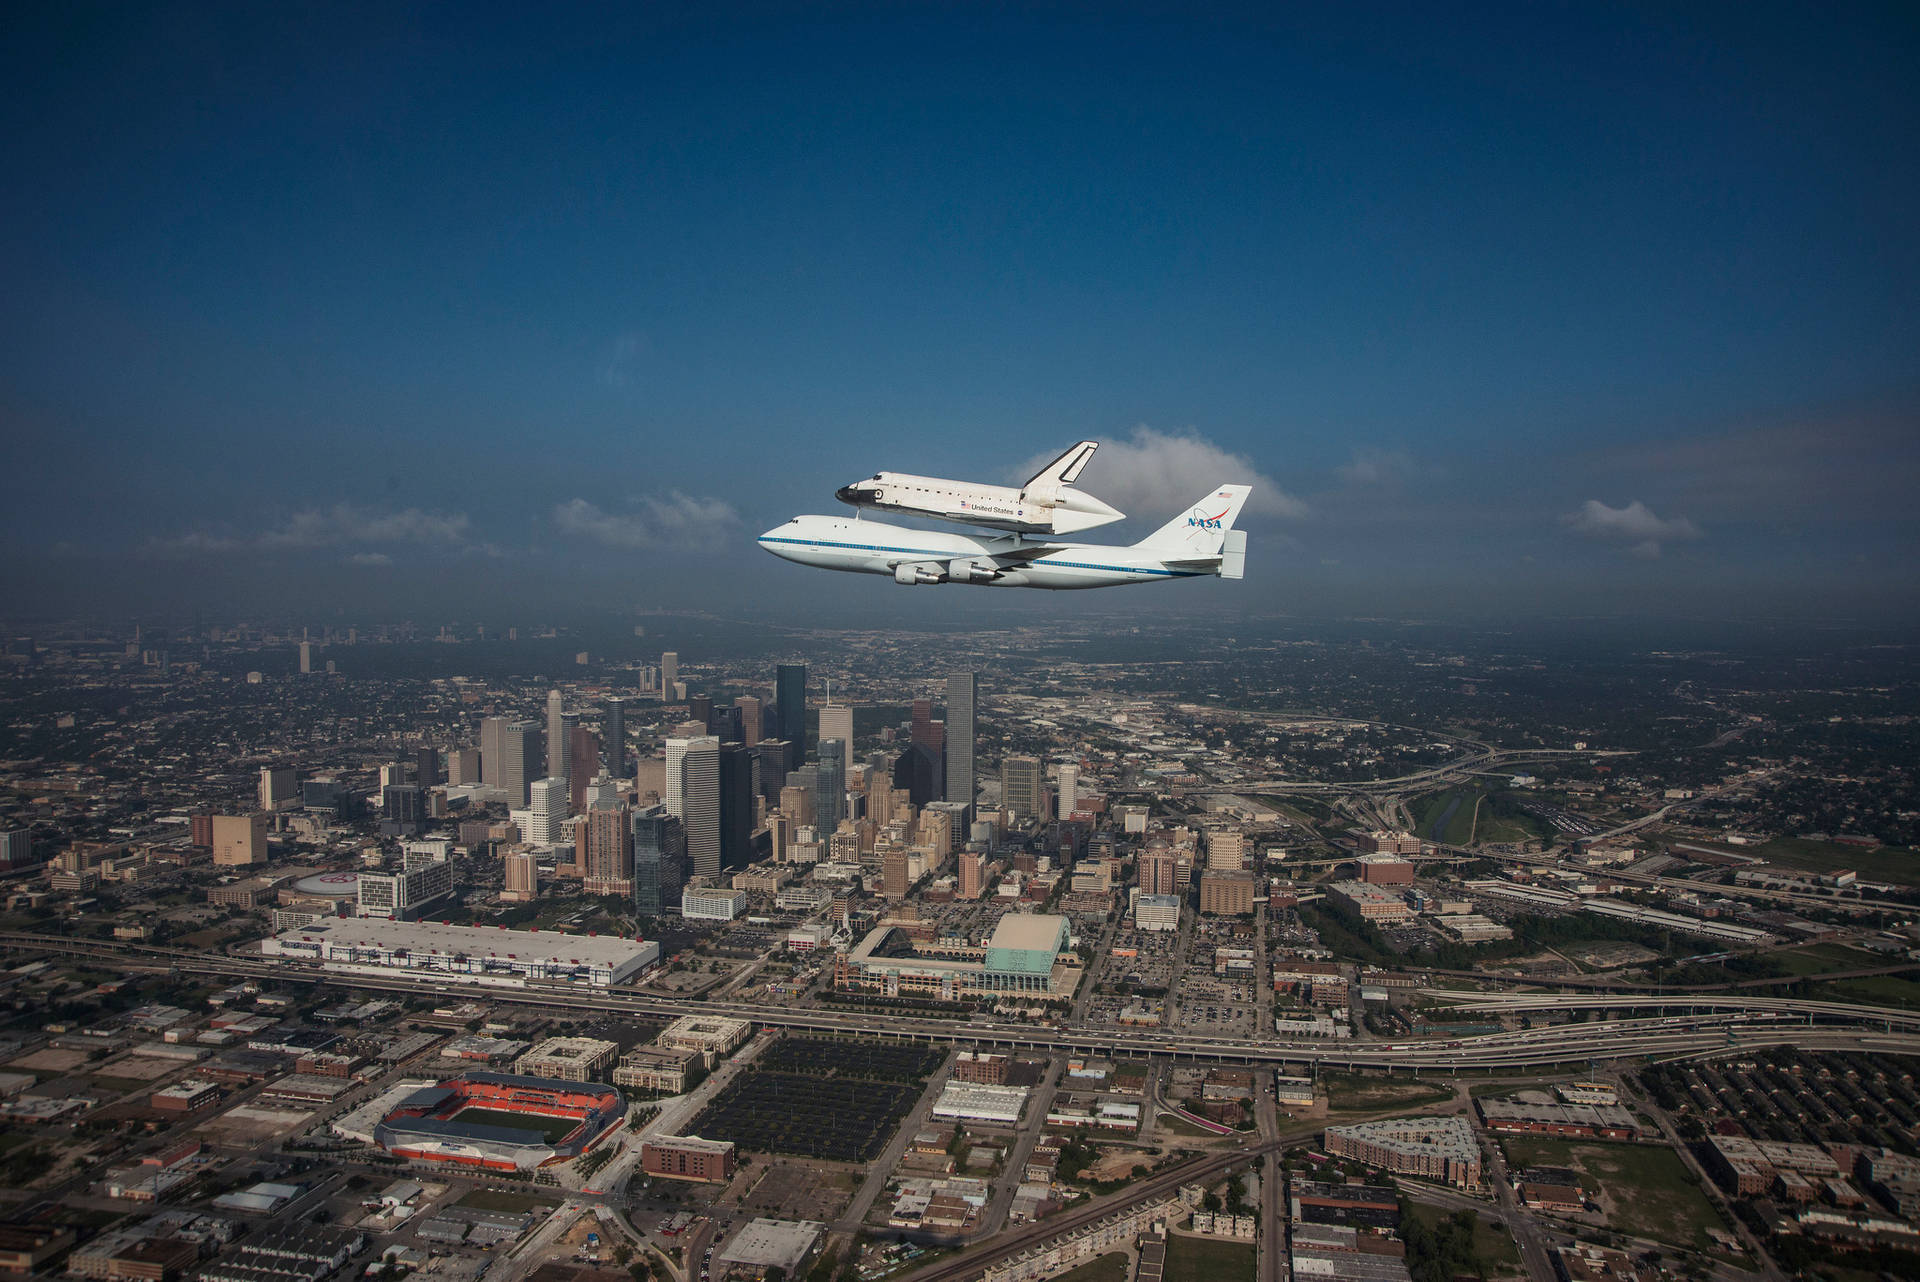 Nasa Houston Aircrafts Flying Over City Wallpaper